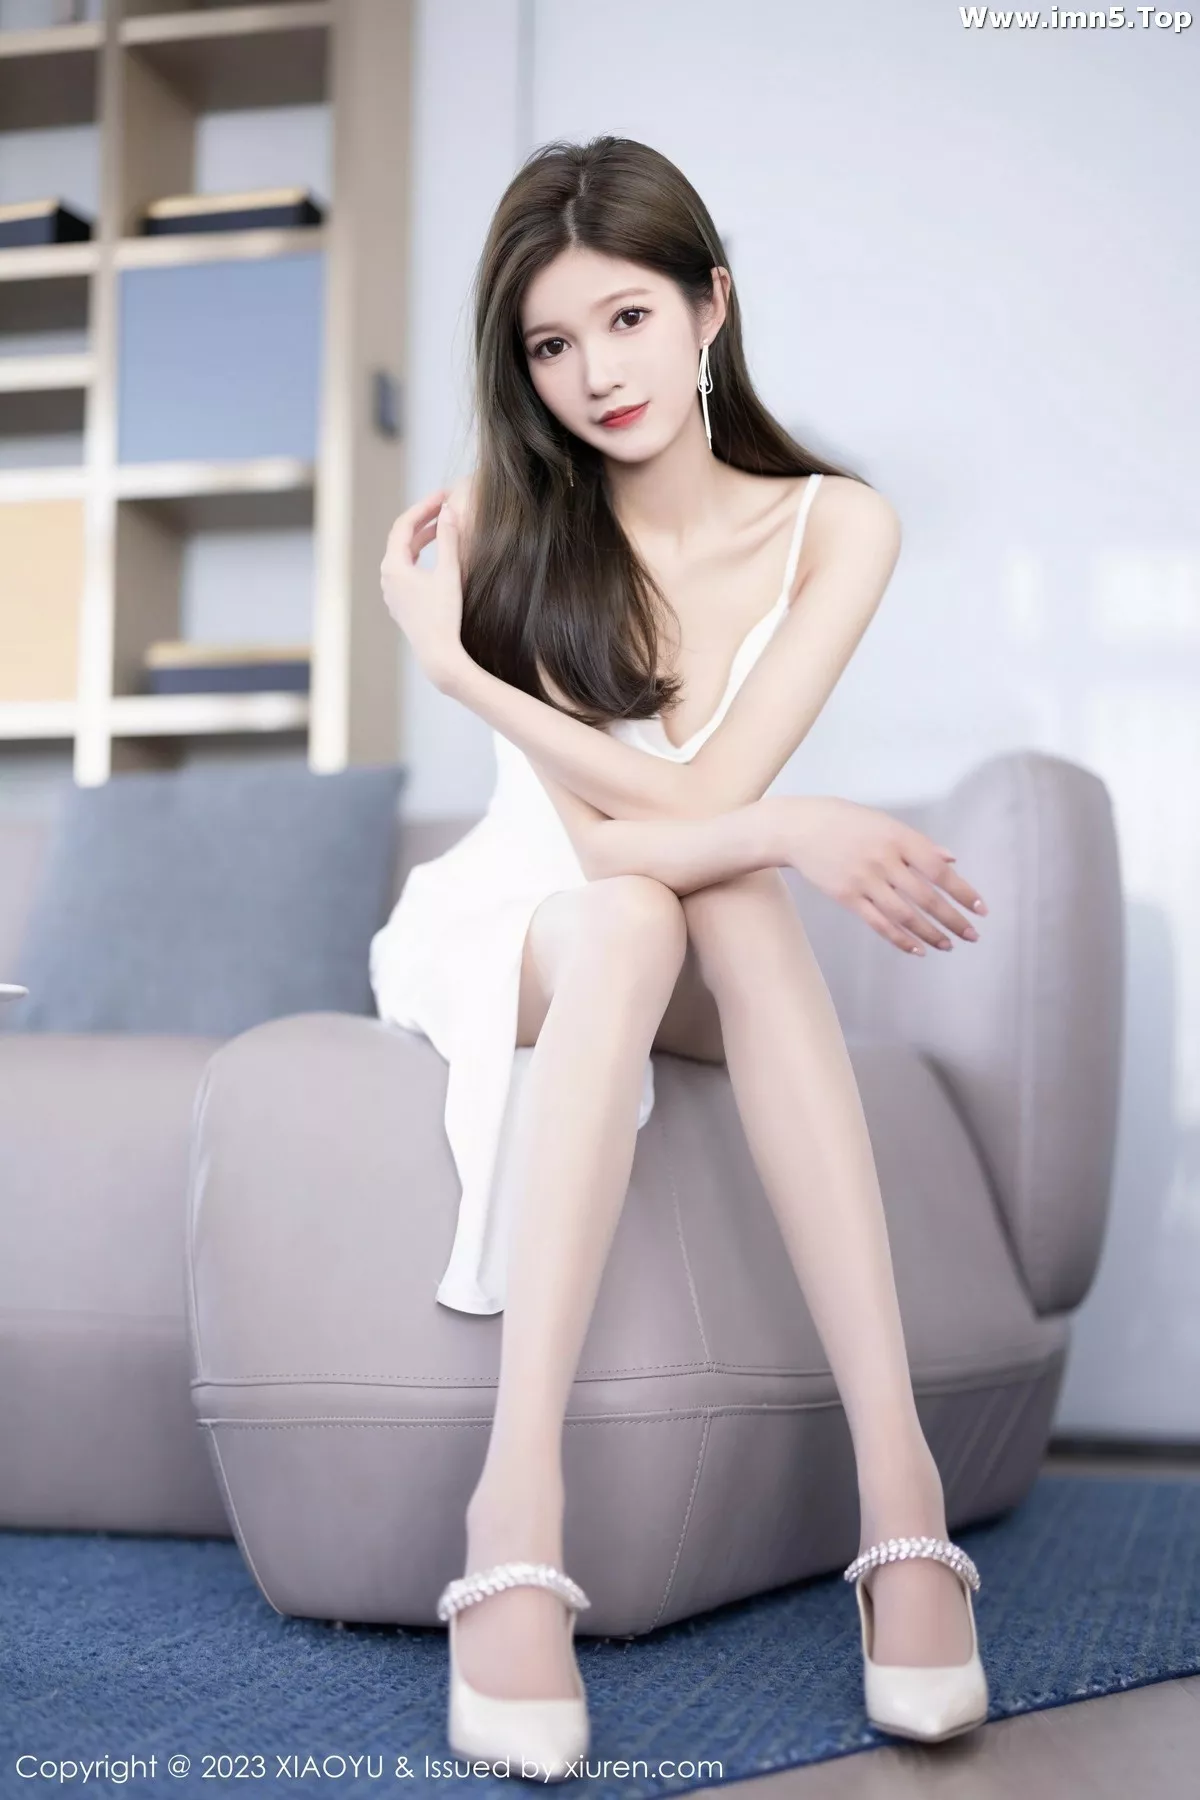 [XiaoYu画语界]Vol.1050_模特程程程白色吊带长裙+粉红色薄纱布兜秀曼妙身姿诱惑写真88P